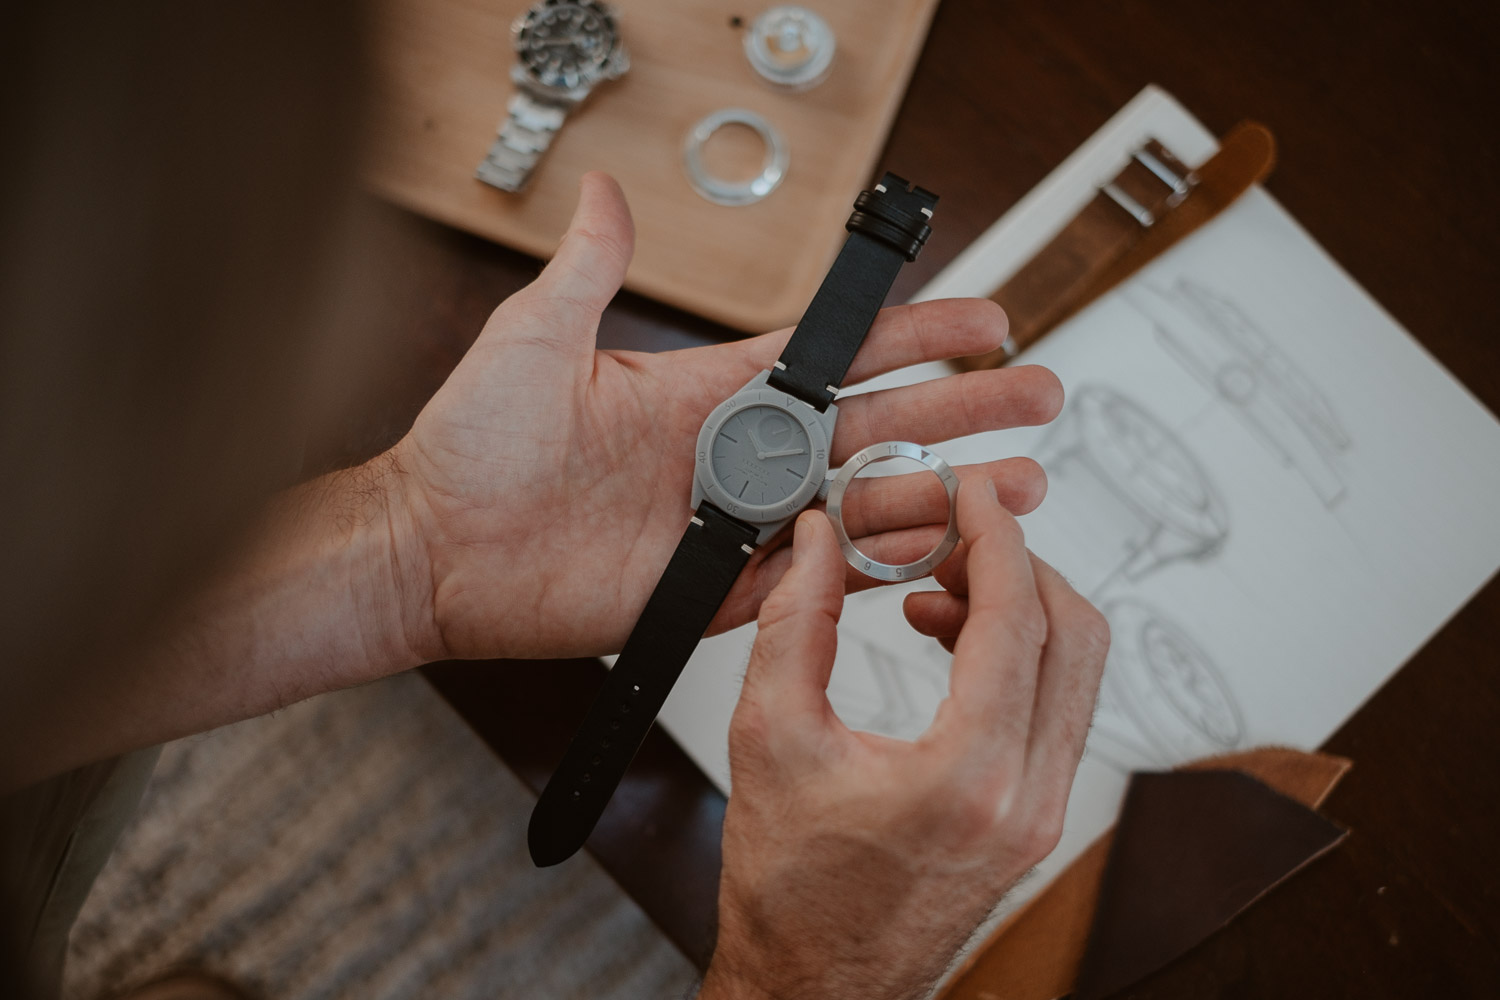 photographies d’un créateur & designer de montres éco-durables, sustainable tool watches, à Clisson, pays de la loire